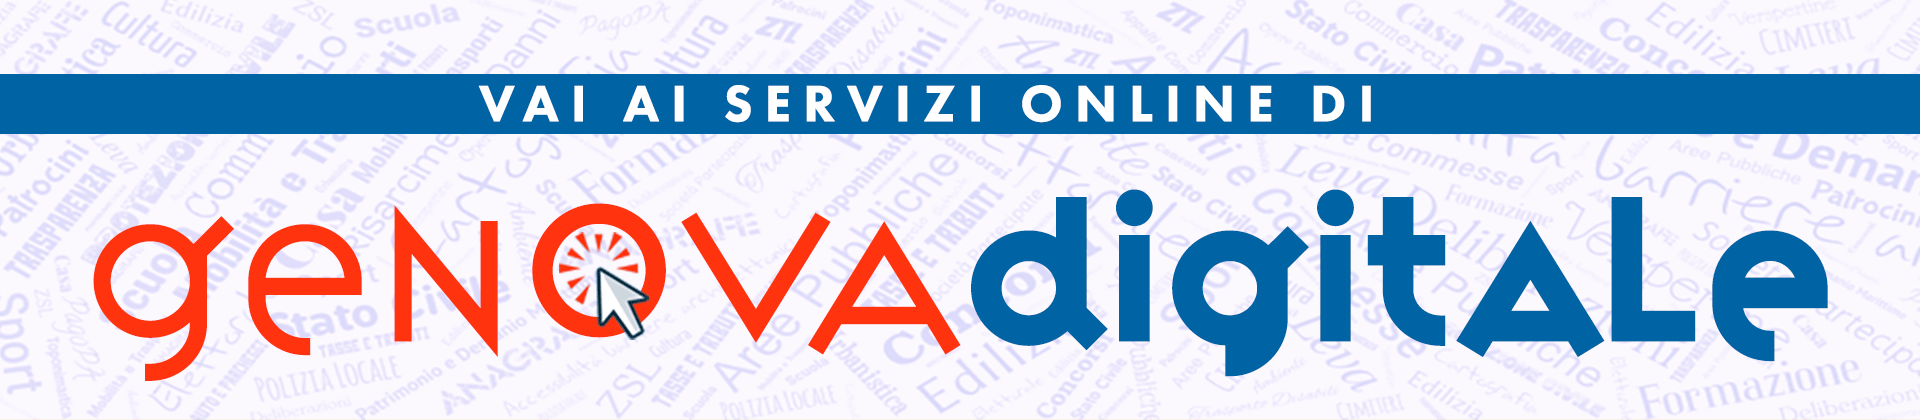 Accedi ai servizi online - Genova Digitale